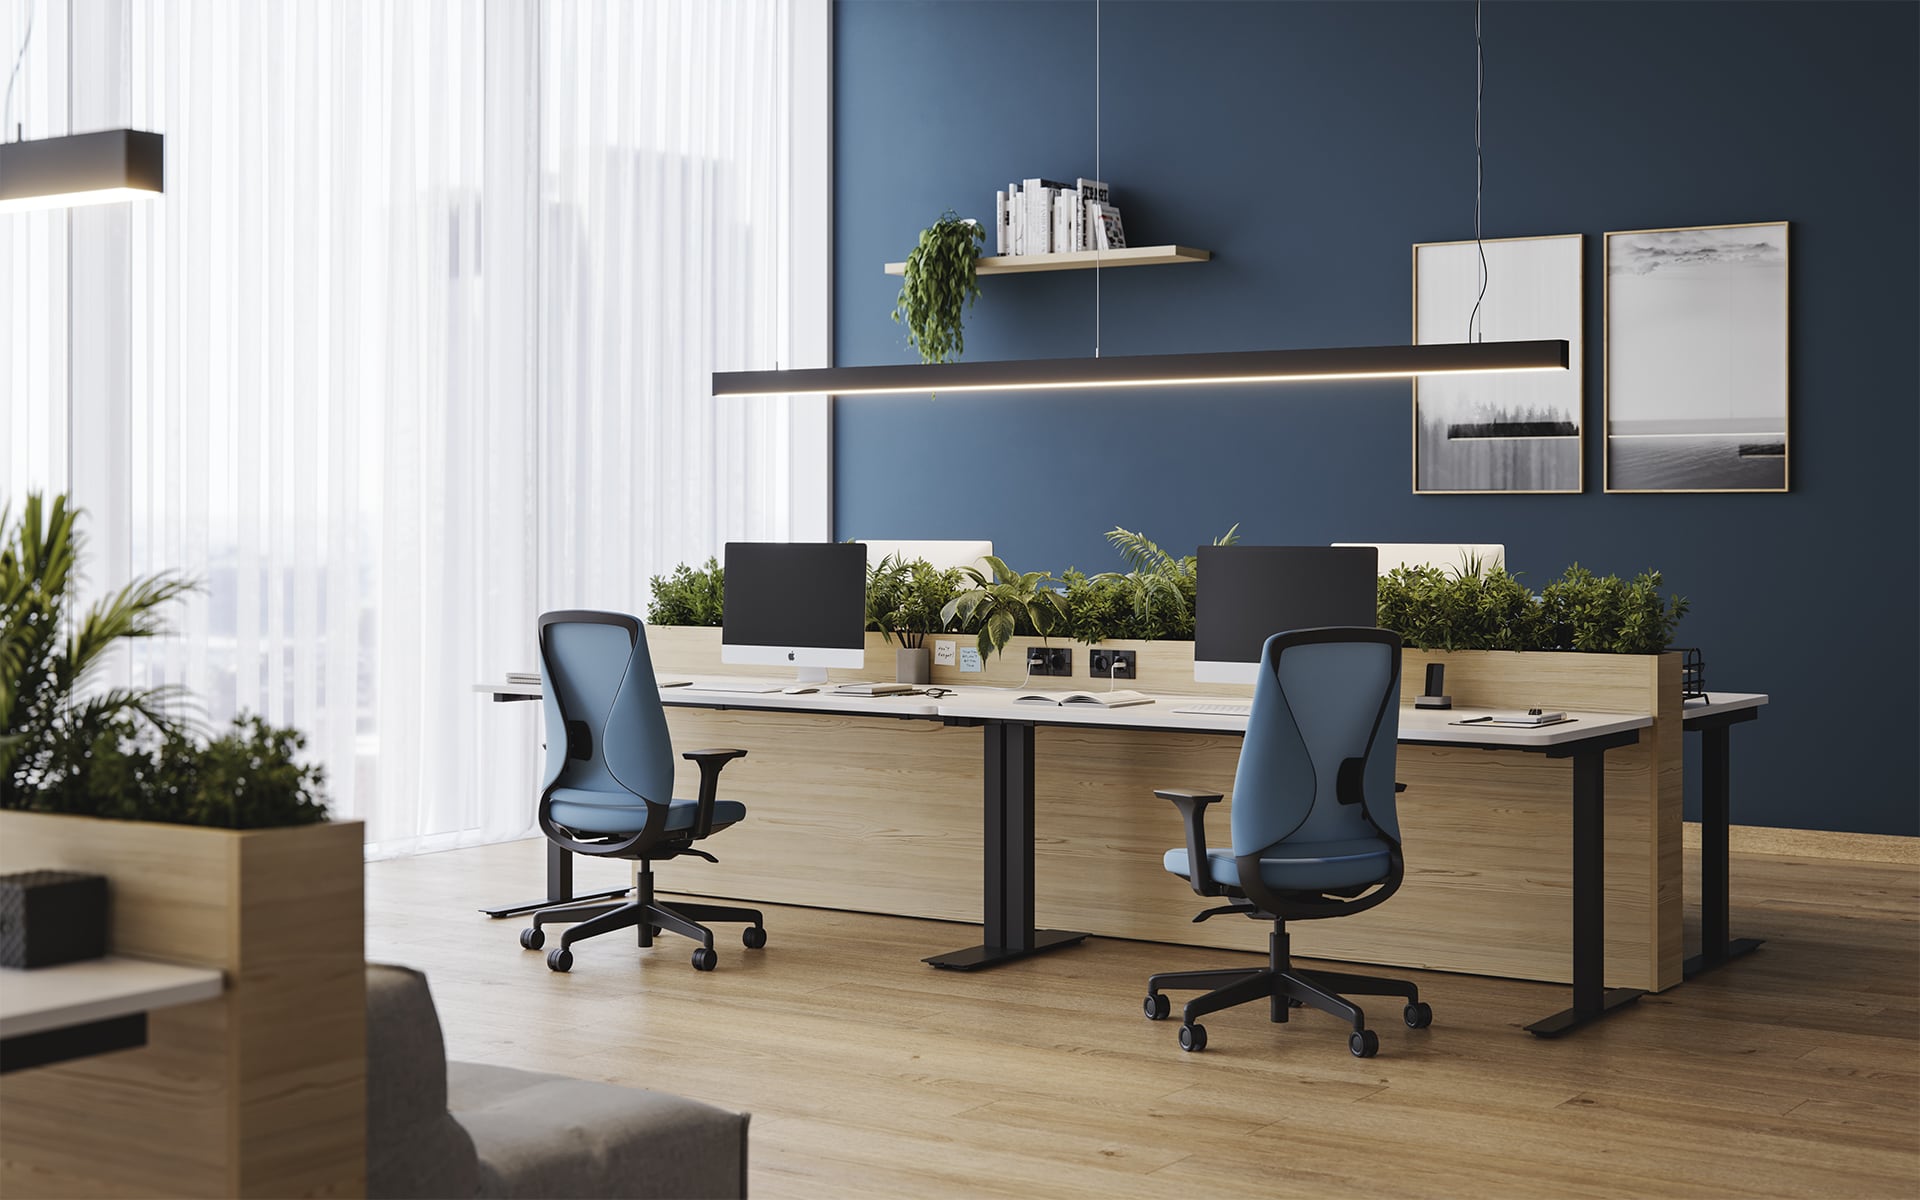 Comfordy Silhouette Bürostuhl von ITO Design mit hellblauem Polster in modernem Büro mit vielen Pflanzen